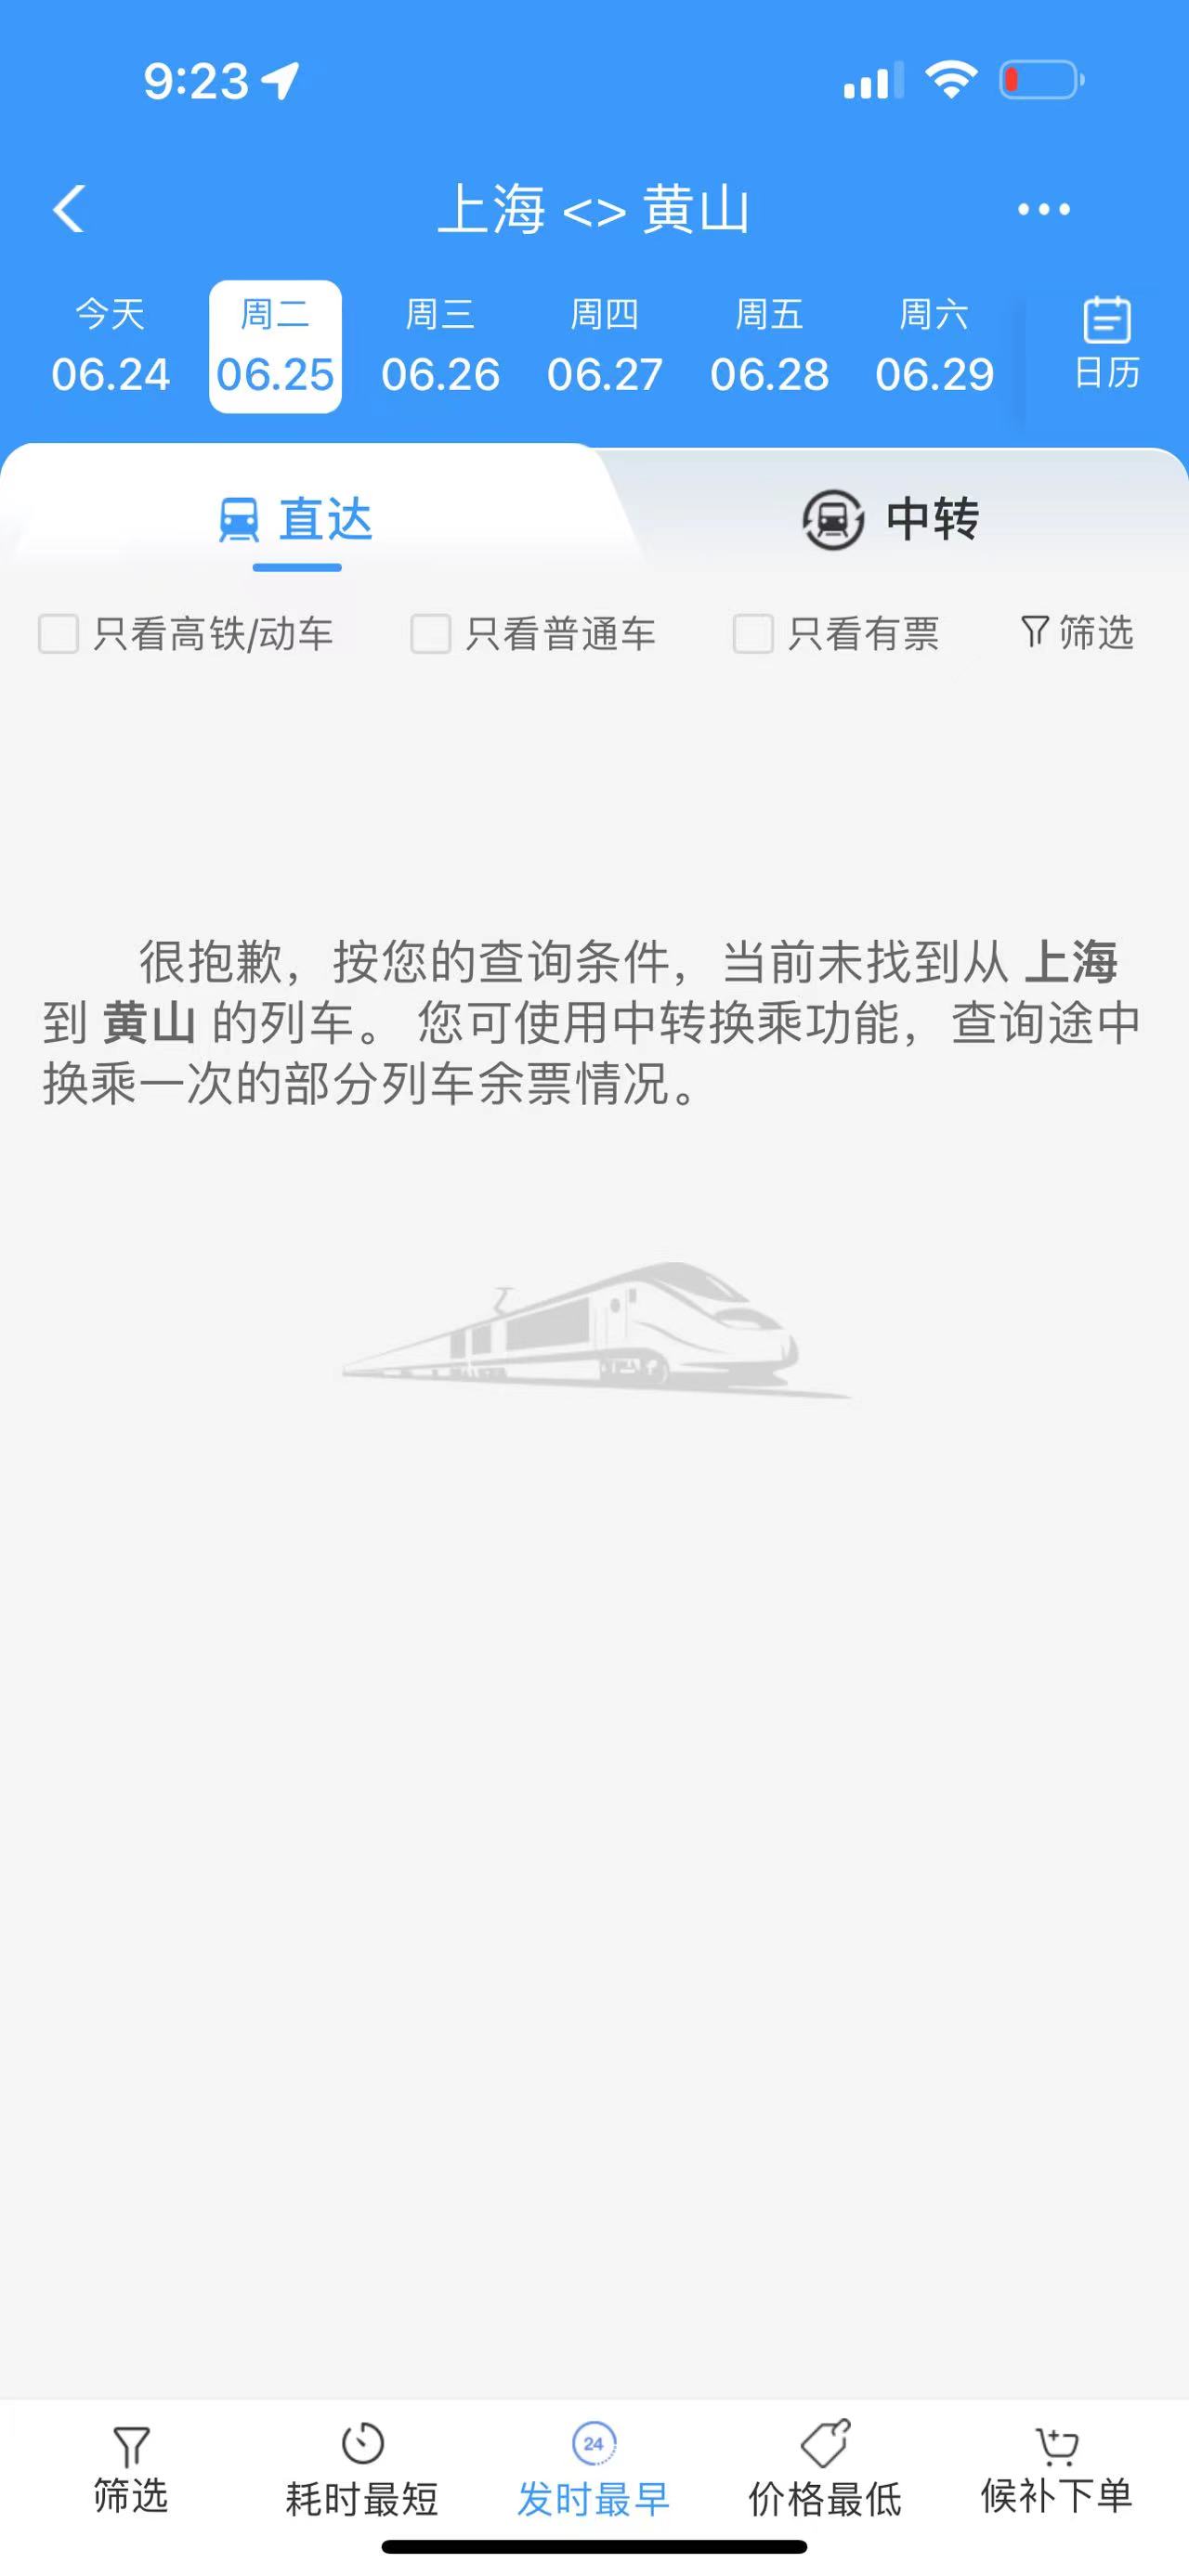 安徽浙江暴雨致部分铁路区段水灾风险，列车停运至26日